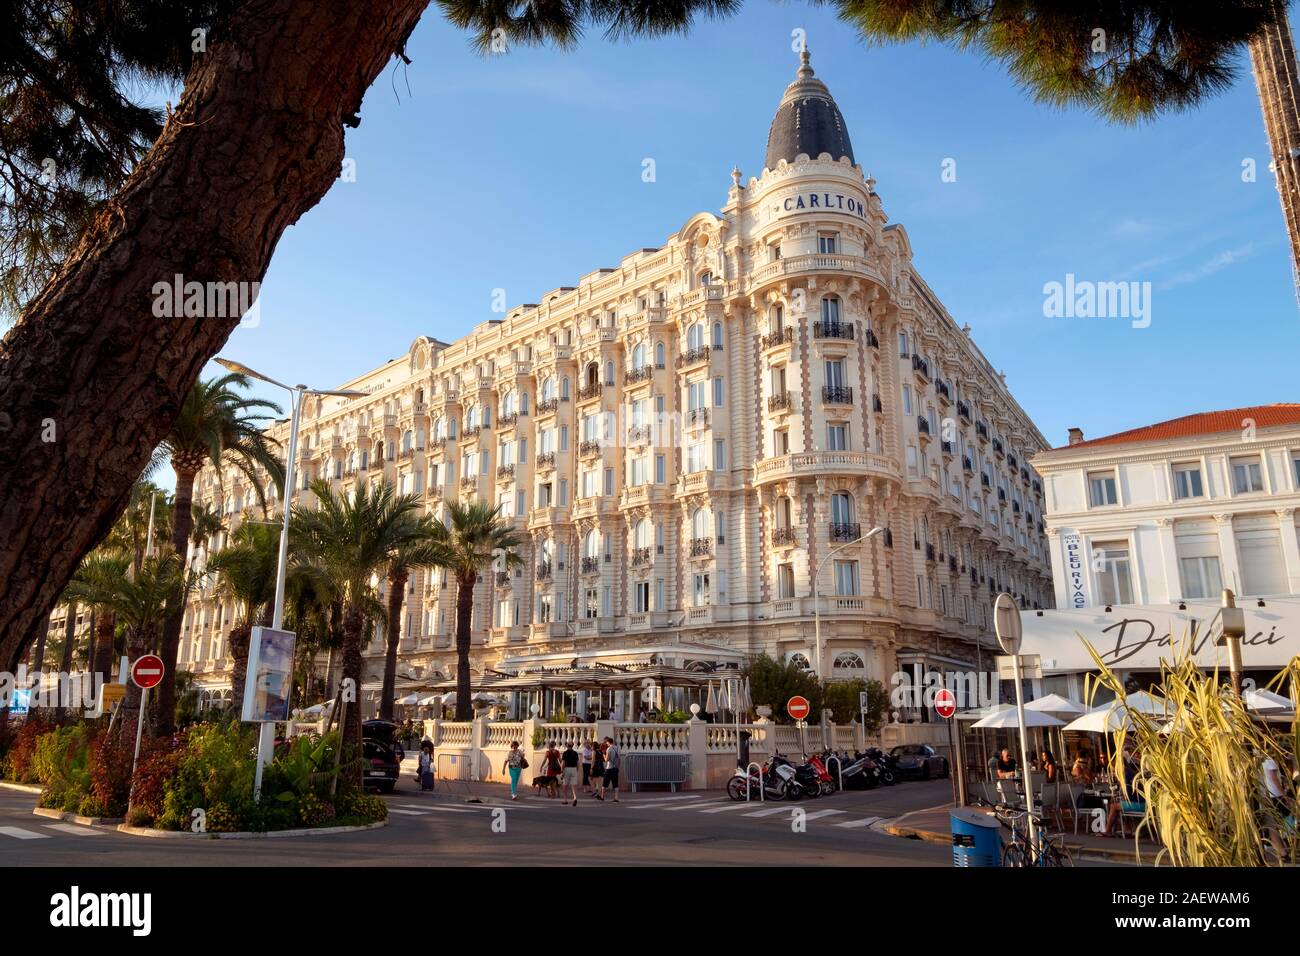 Hotel InterContinental Carlton und Restaurant Da Vinci (rechts), Cannes, Provence, Frankreich, Europa Stockfoto